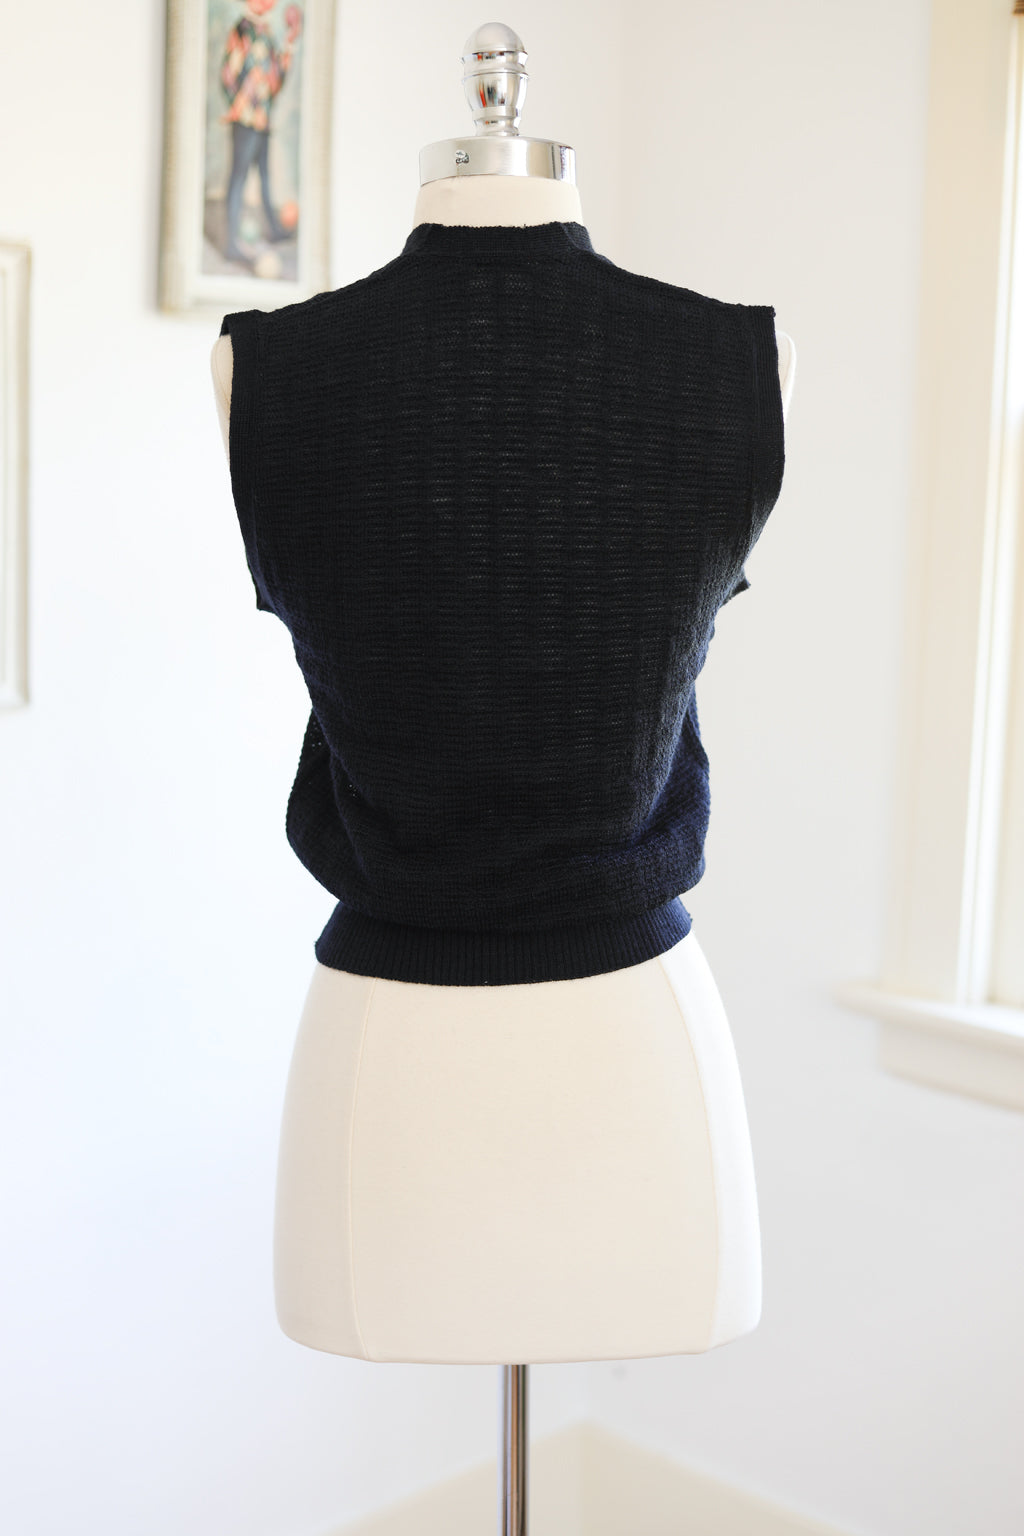 Vintage DEADSTOCK 1940s Knit Vest Top - Navy Blue All-Wool Canadian Sporty Knitwear Sweater Waistcoat - Choose Yours!